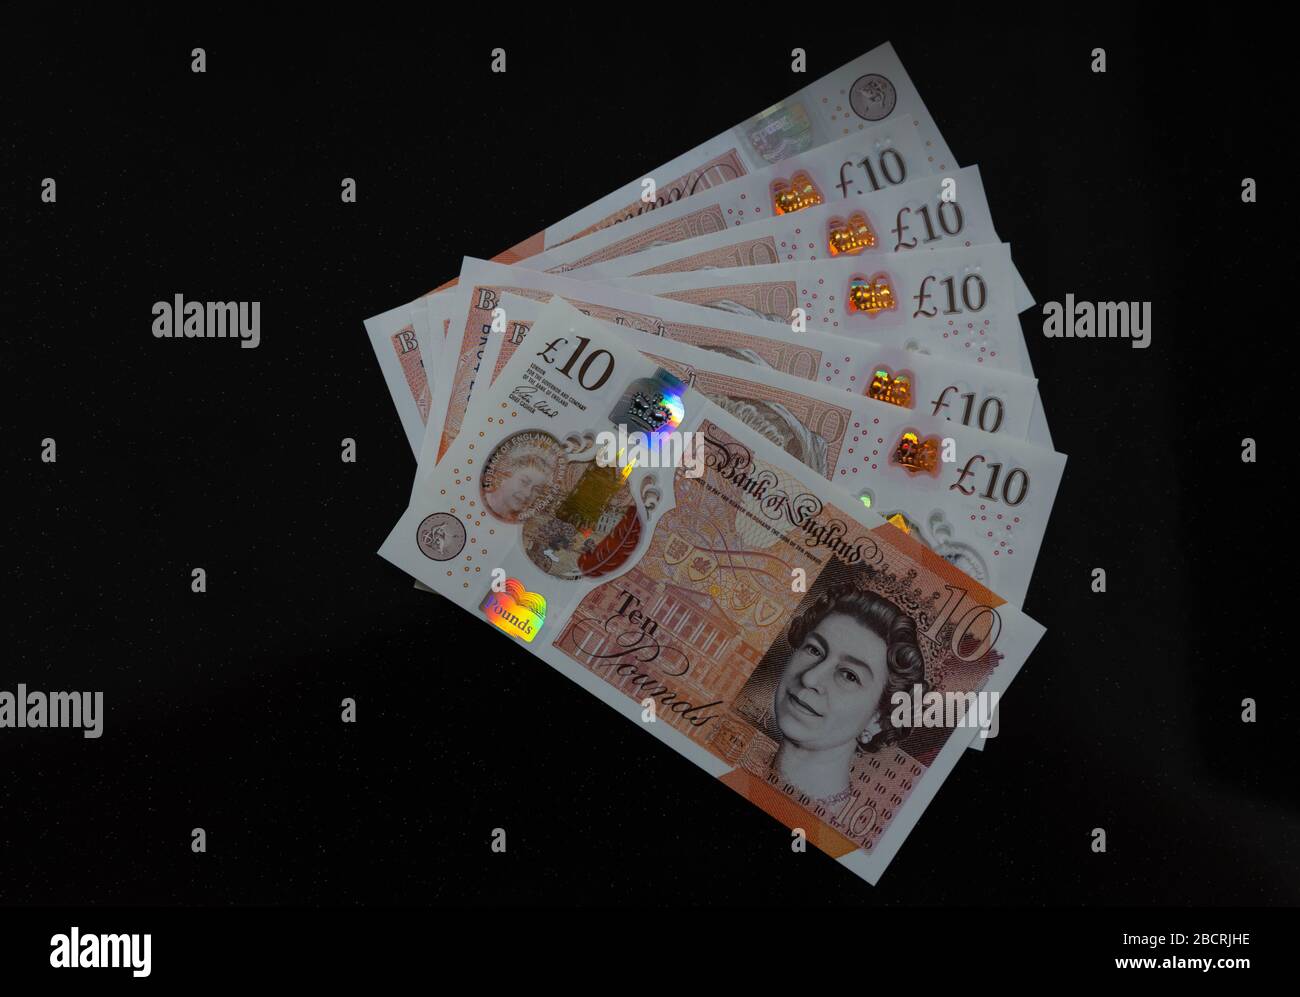 Ten pound notes Stock Photo